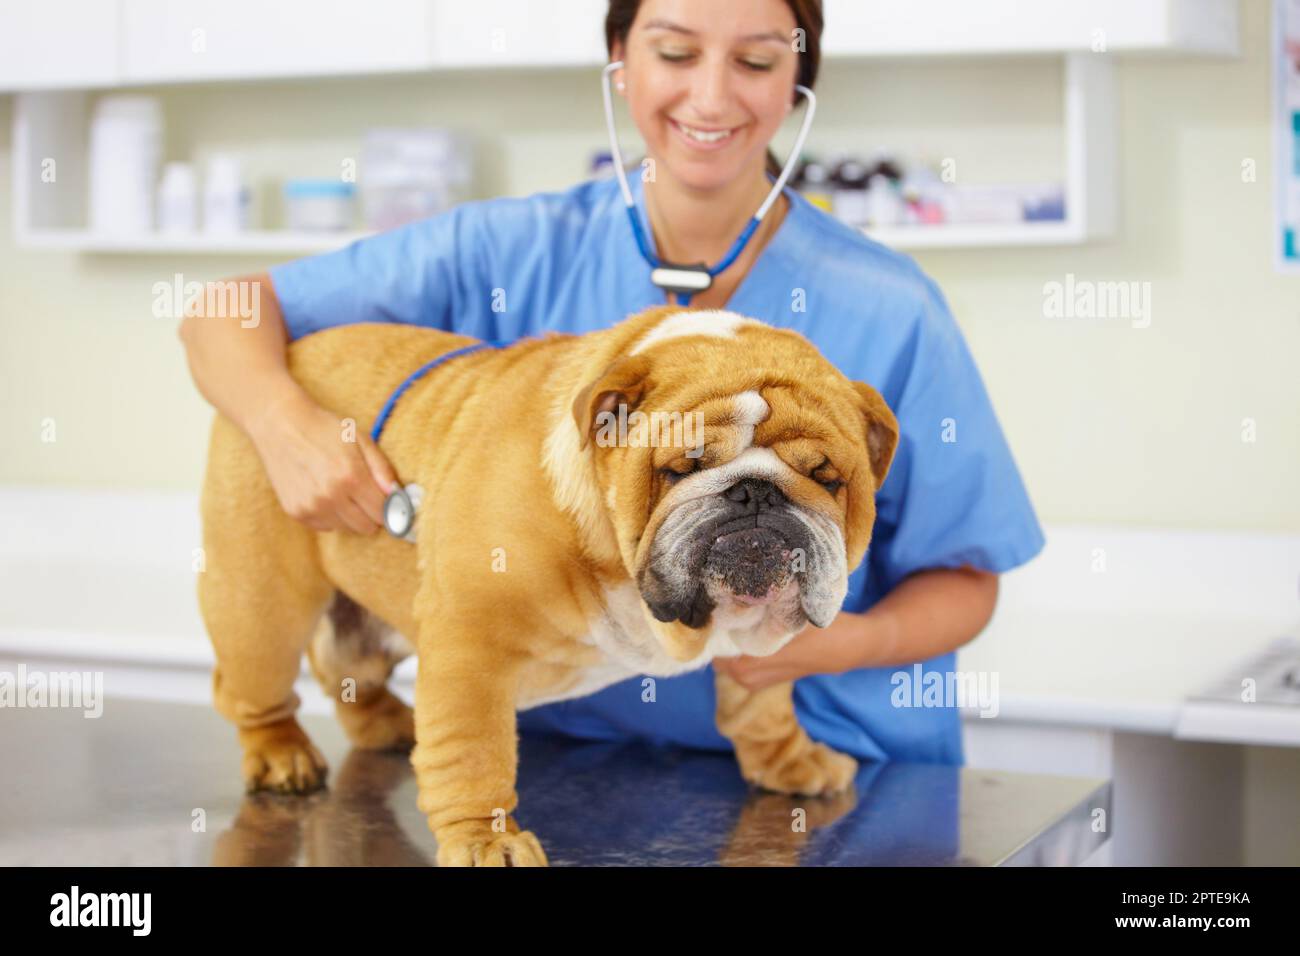 Bulldog forte e sano. un giovane veterinario che esamina un grande bulldog seduto su un tavolo d'esame Foto Stock